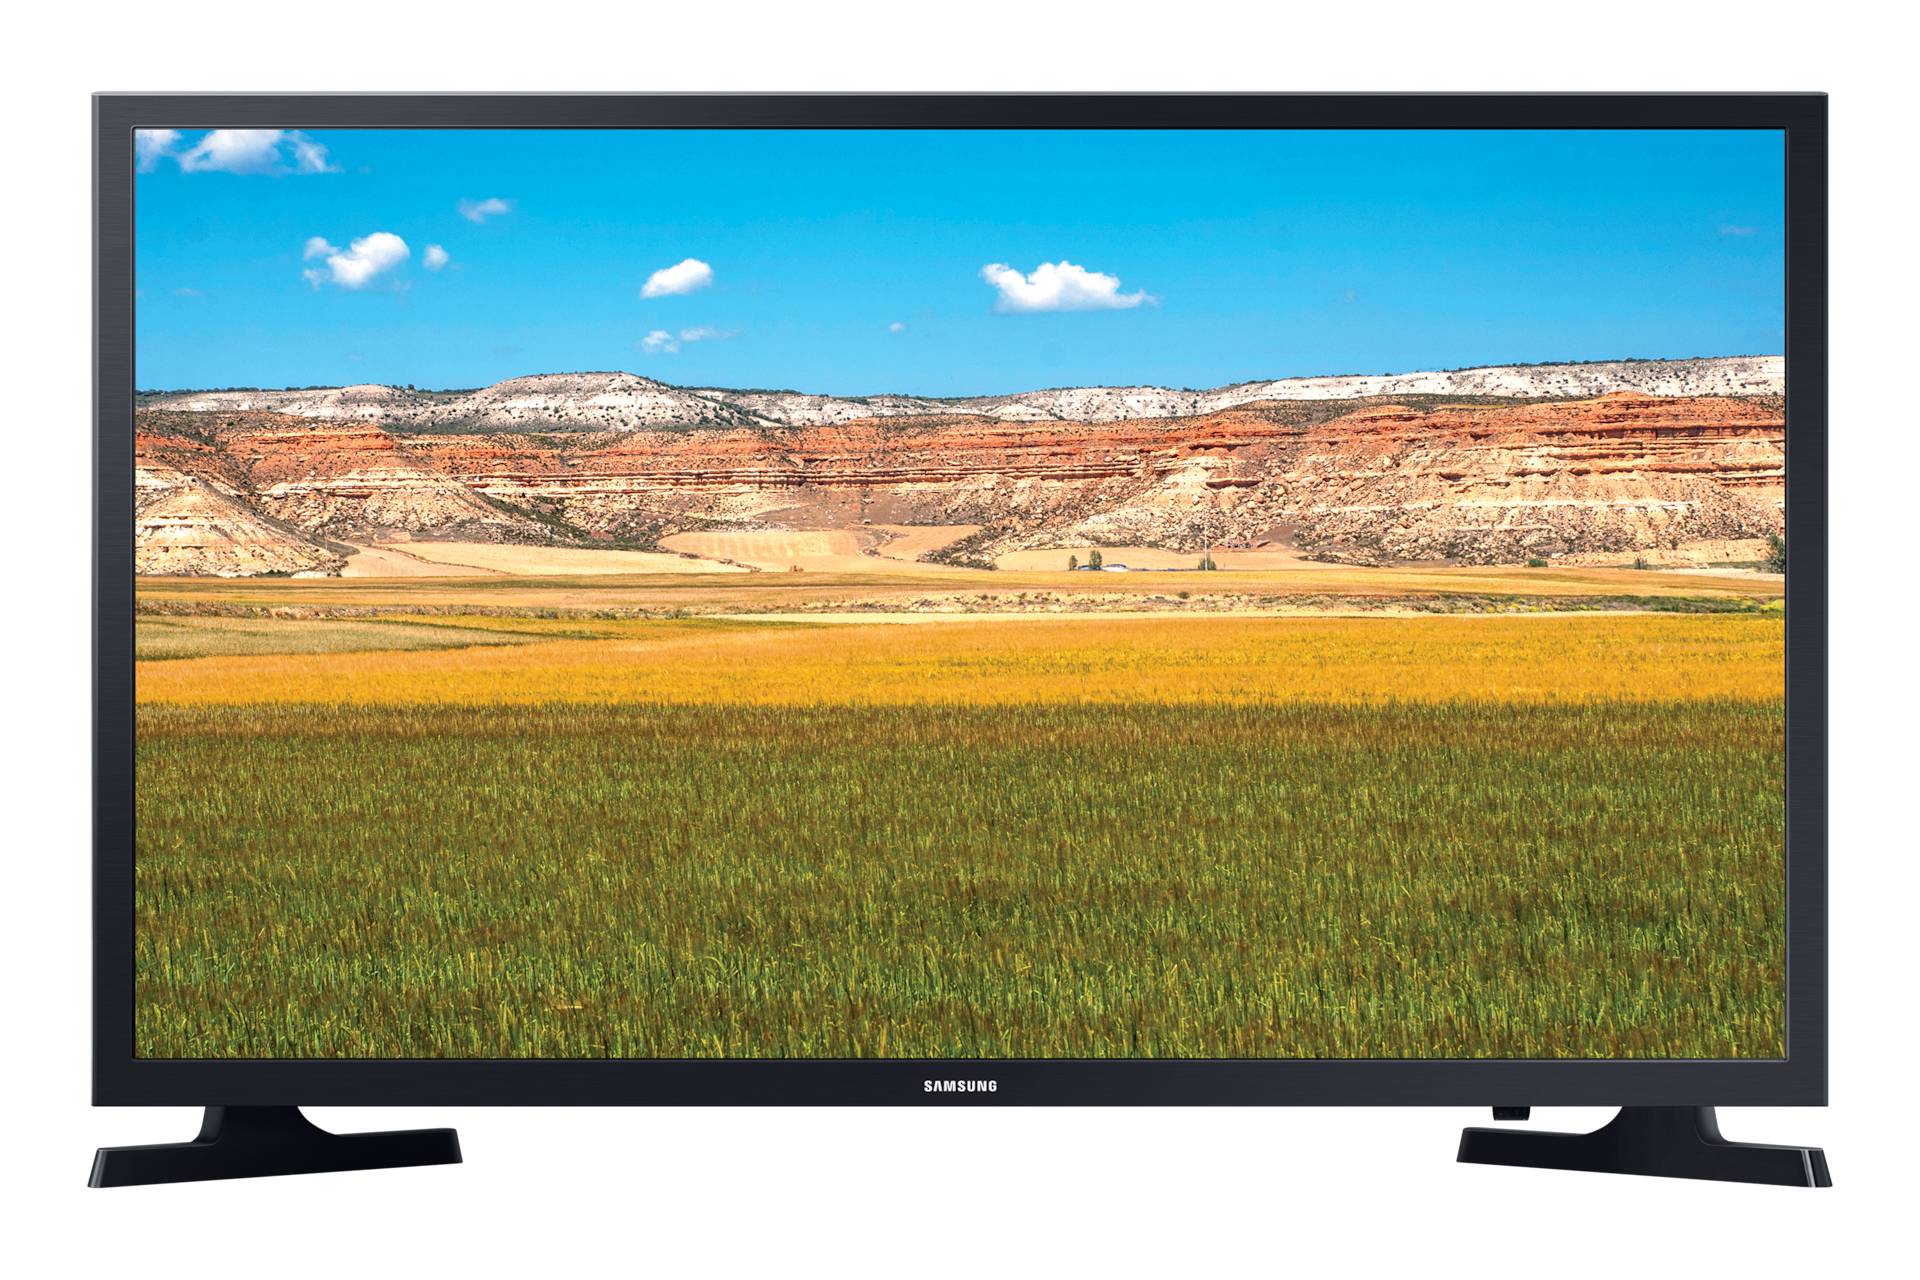 Télévision Samsung 49 Pouces (124 cm) TV HD Flat LED 